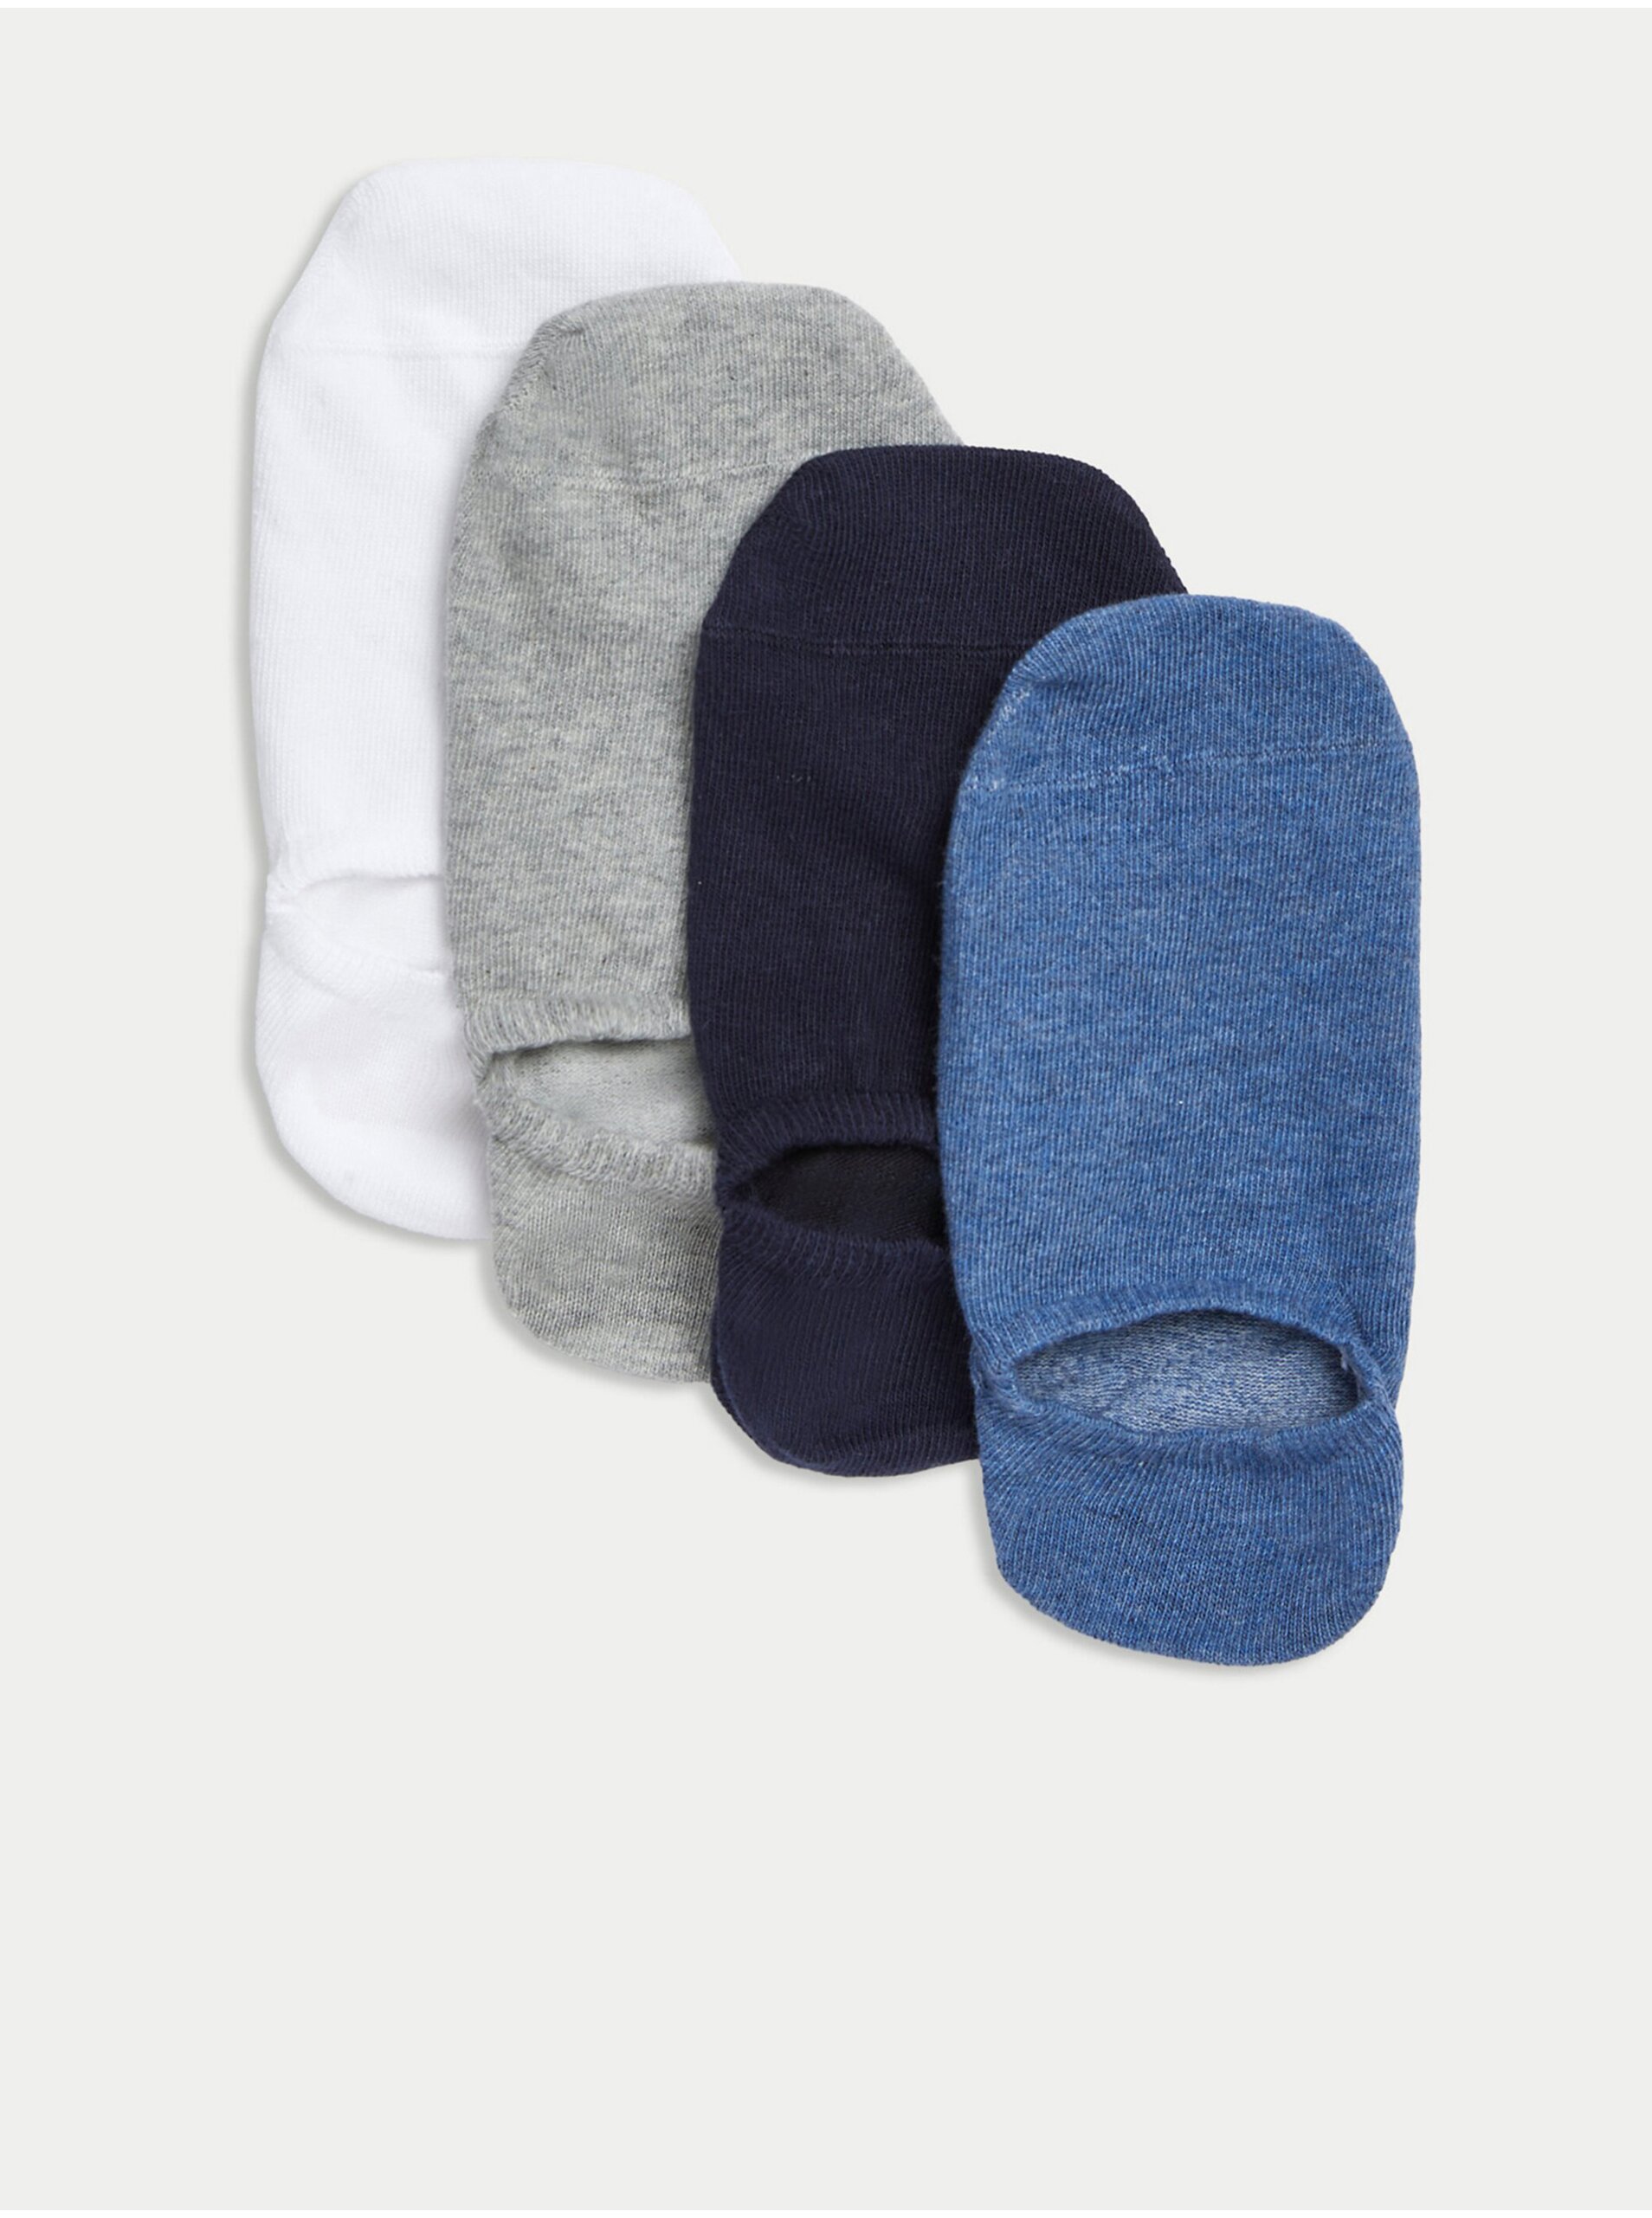 Lacno Sada štyroch párov pánskych ponožiek v modrej, tmavomodrej, šedej a bielej farbe Marks & Spencer Trainer Liners™